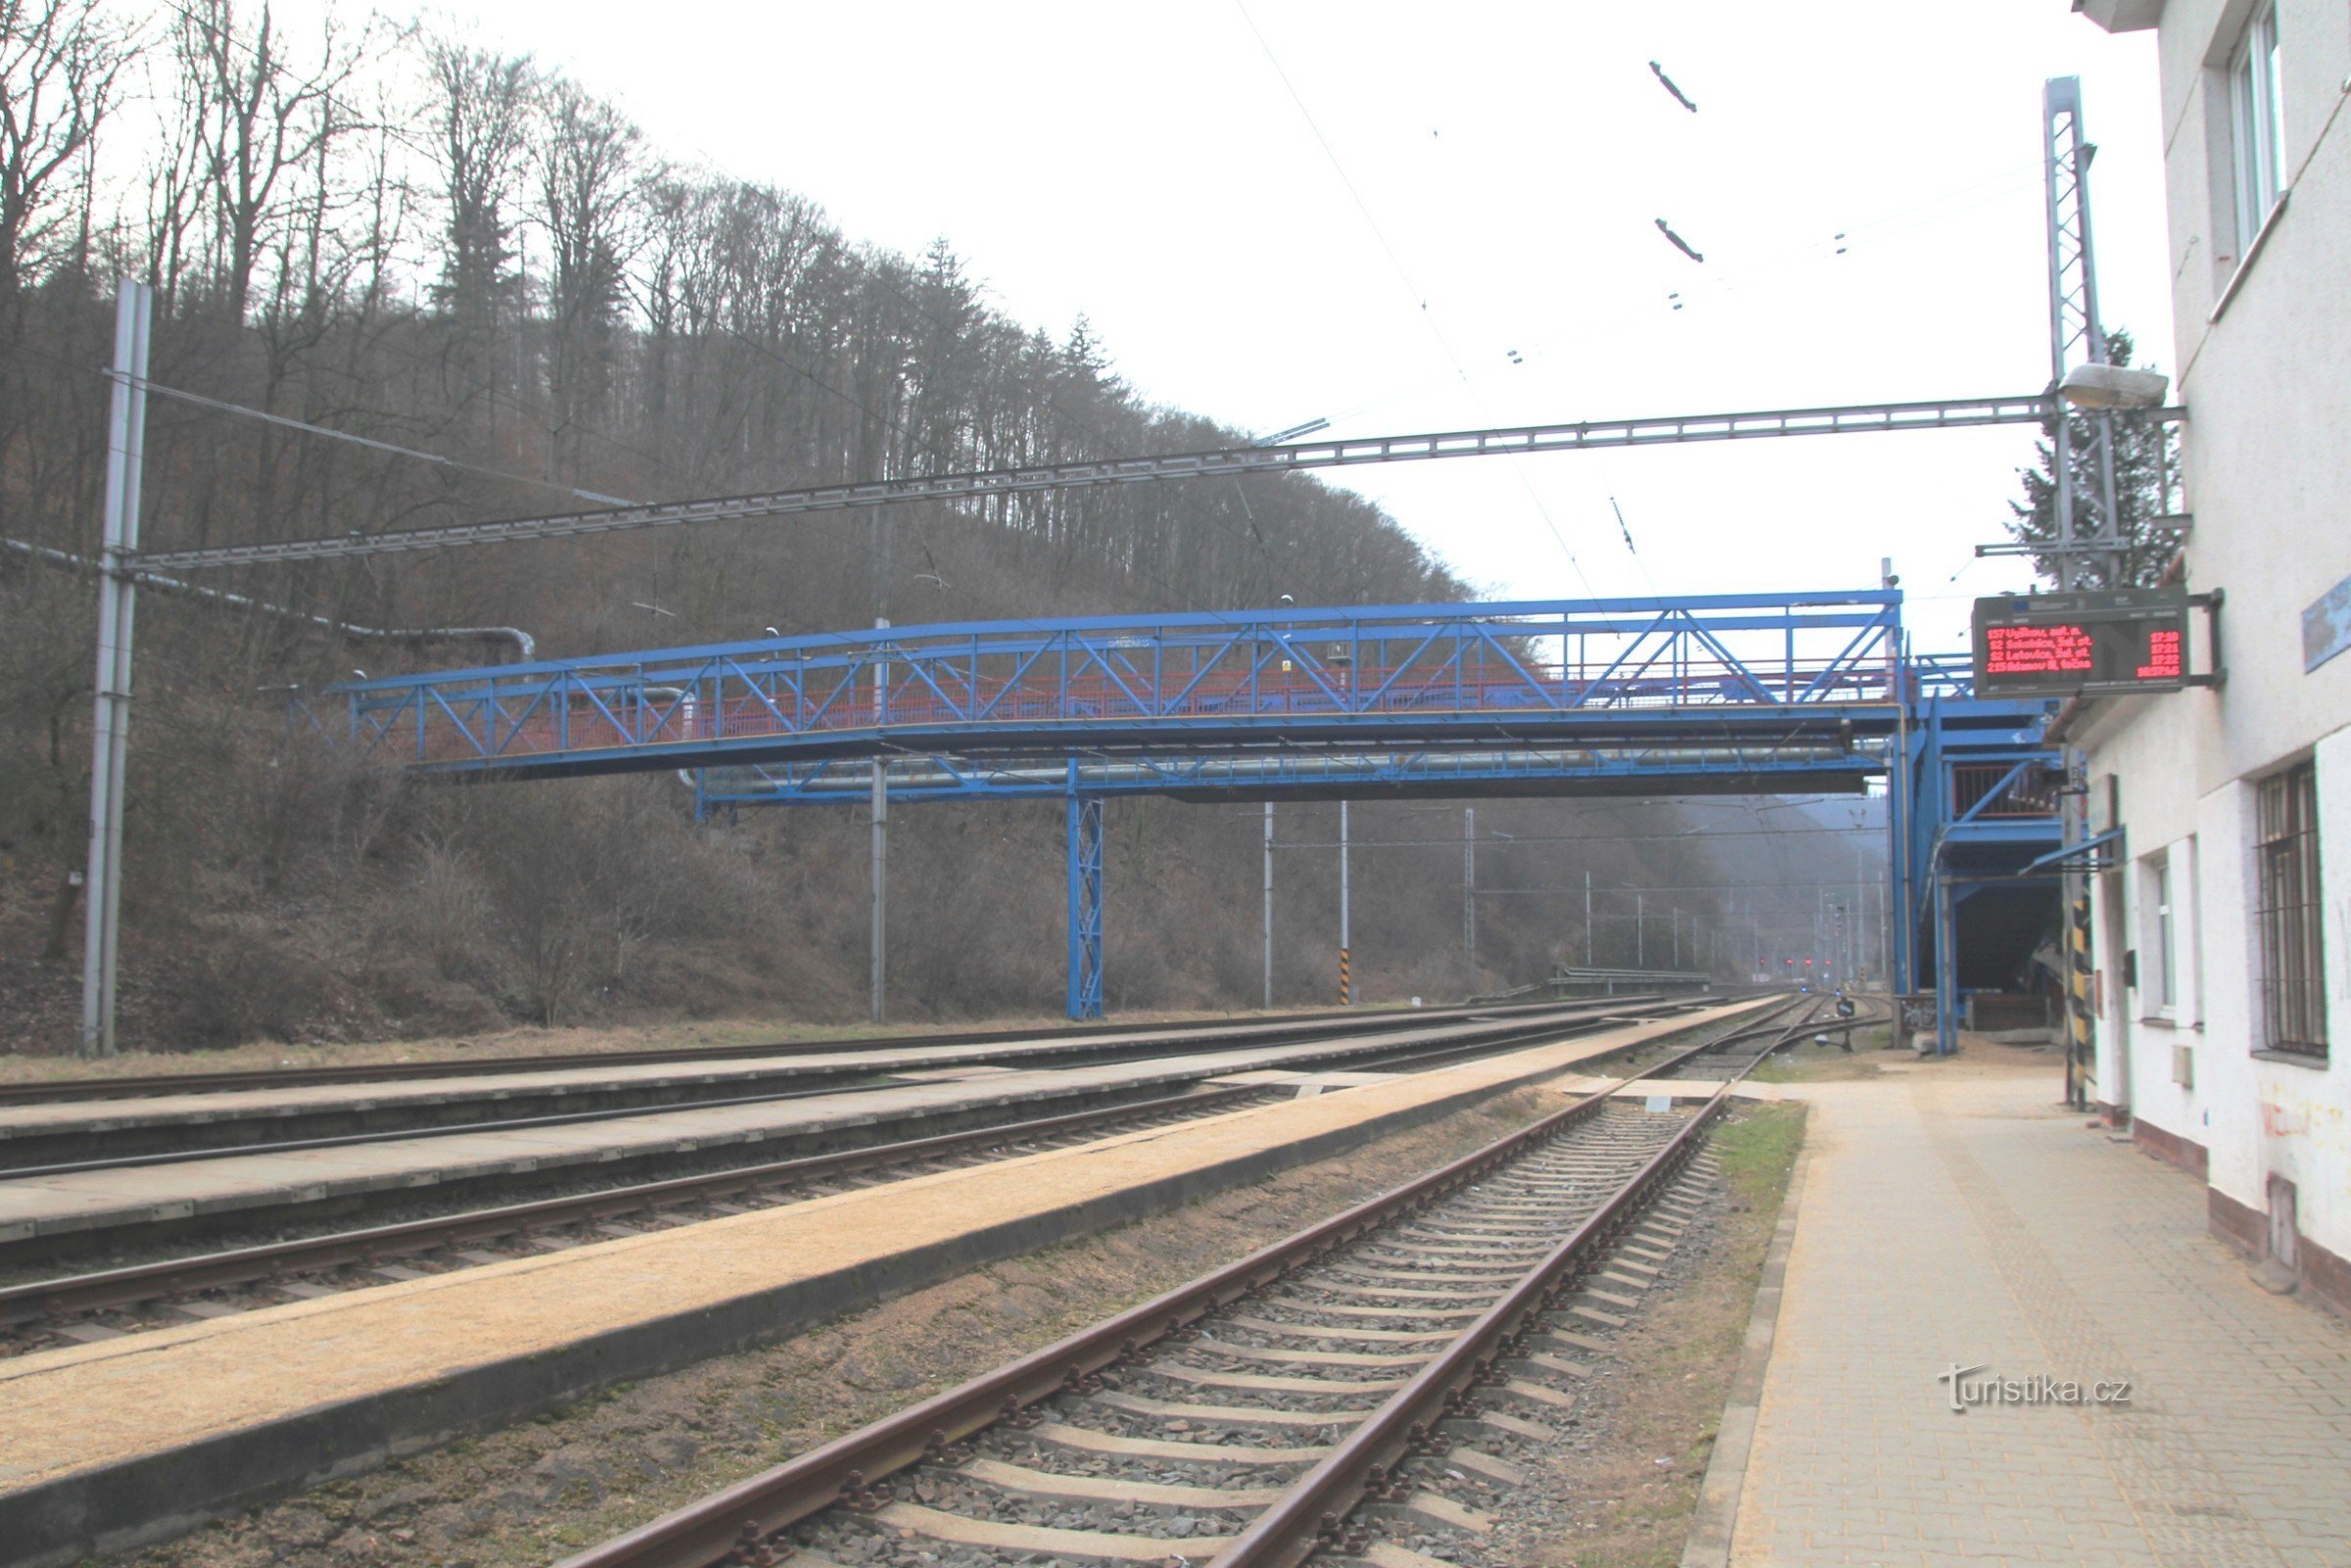 Άποψη της πεζογέφυρας από την αυλή του σιδηροδρόμου, πίσω από αυτήν η βιομηχανική γέφυρα από το λεβητοστάσιο Adastu